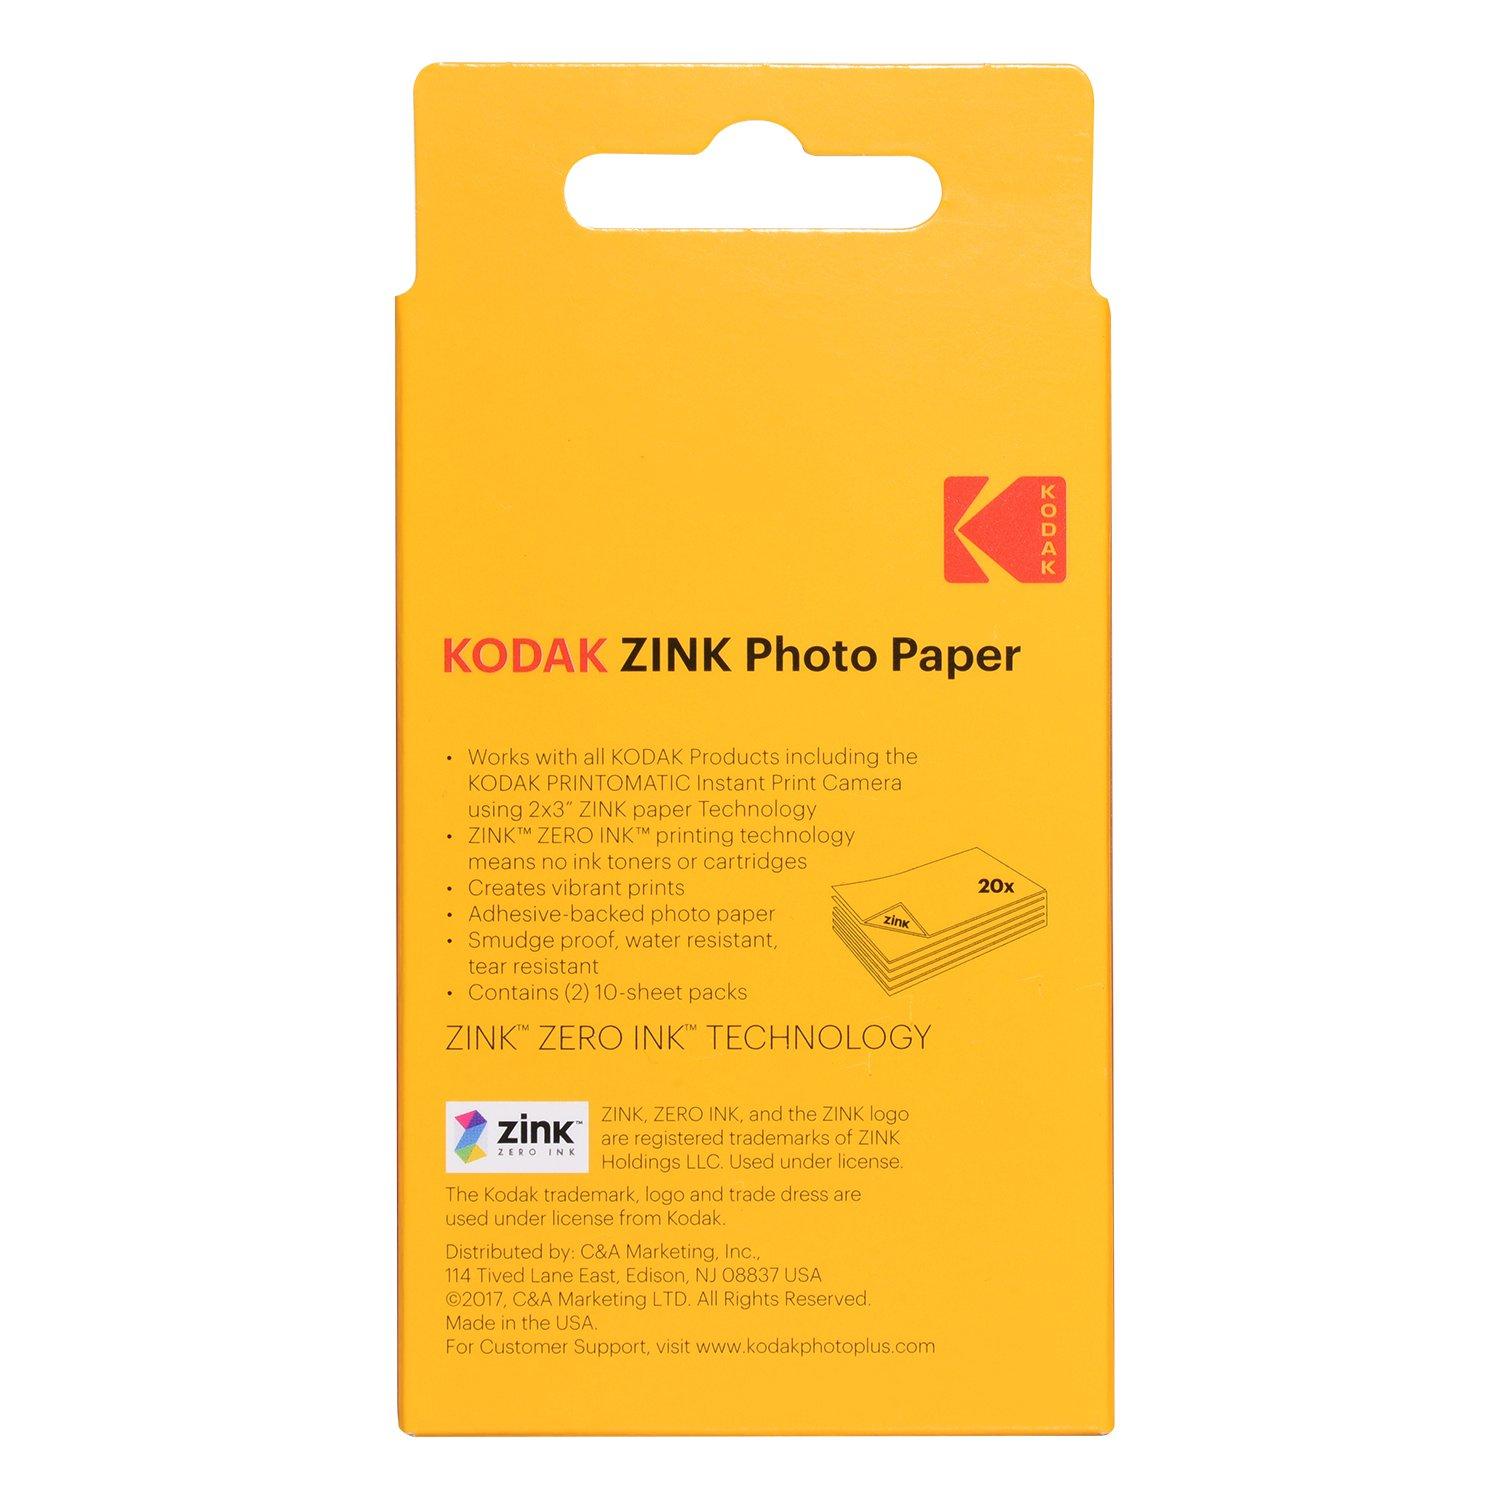 Kodak Zink Photo Paper 2x3 20-pk